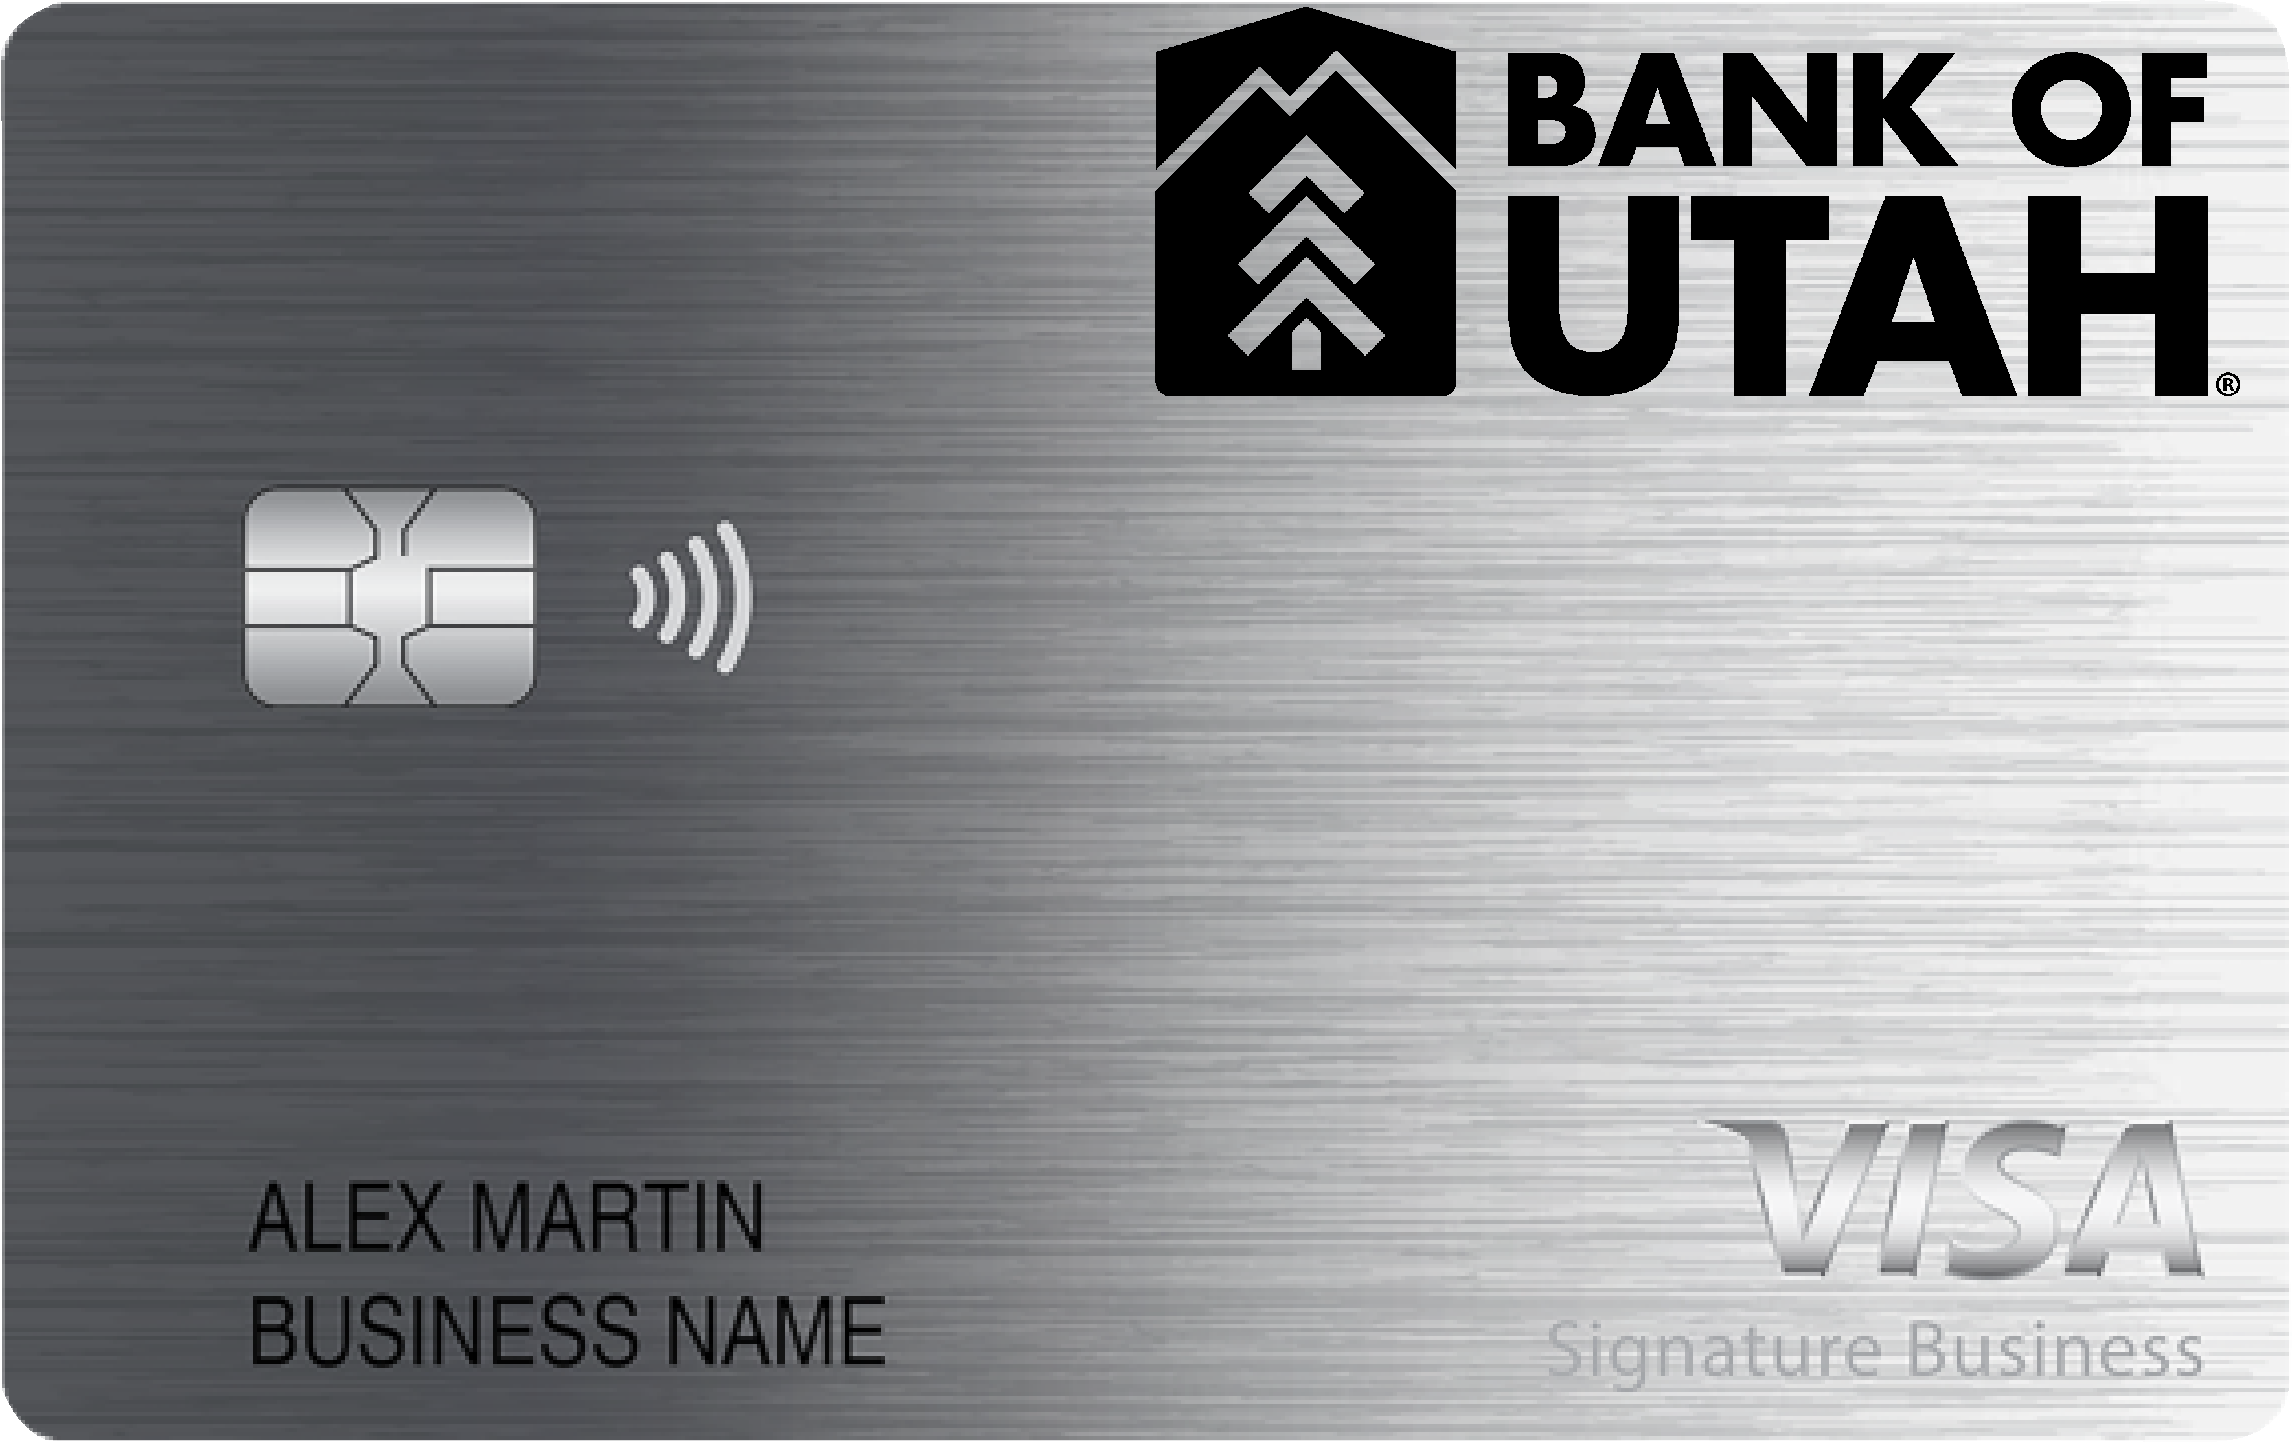 Bank of Utah Smart Business Rewards Card